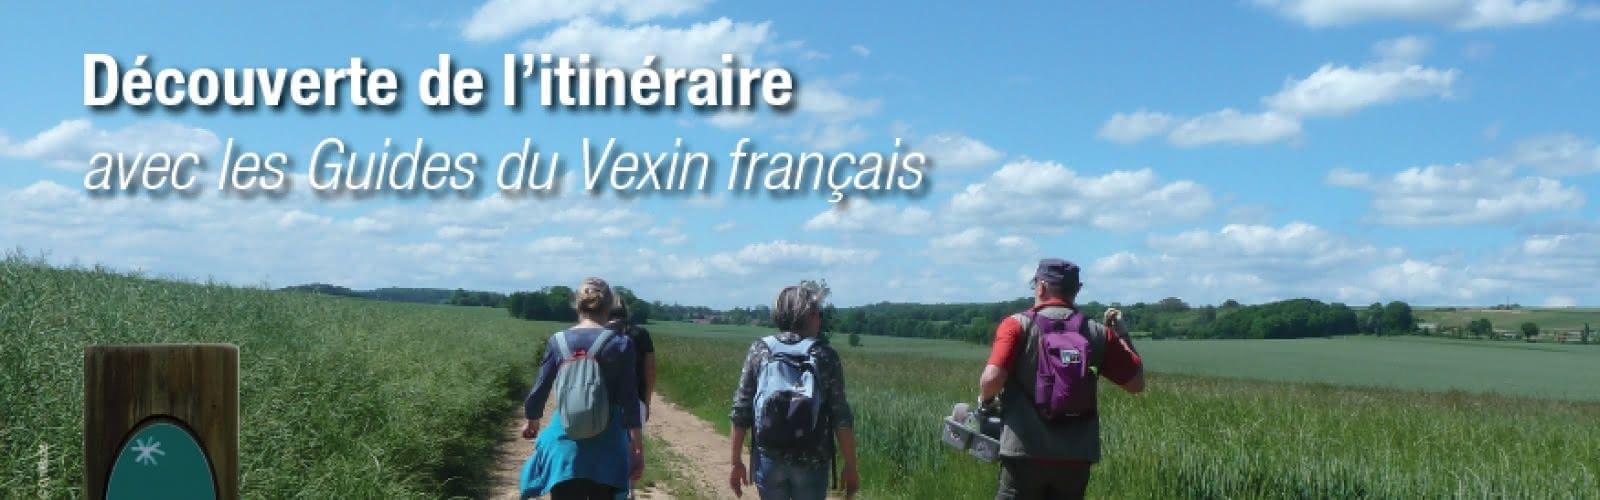 Traversez le Vexin avec les Guides du Vexin français